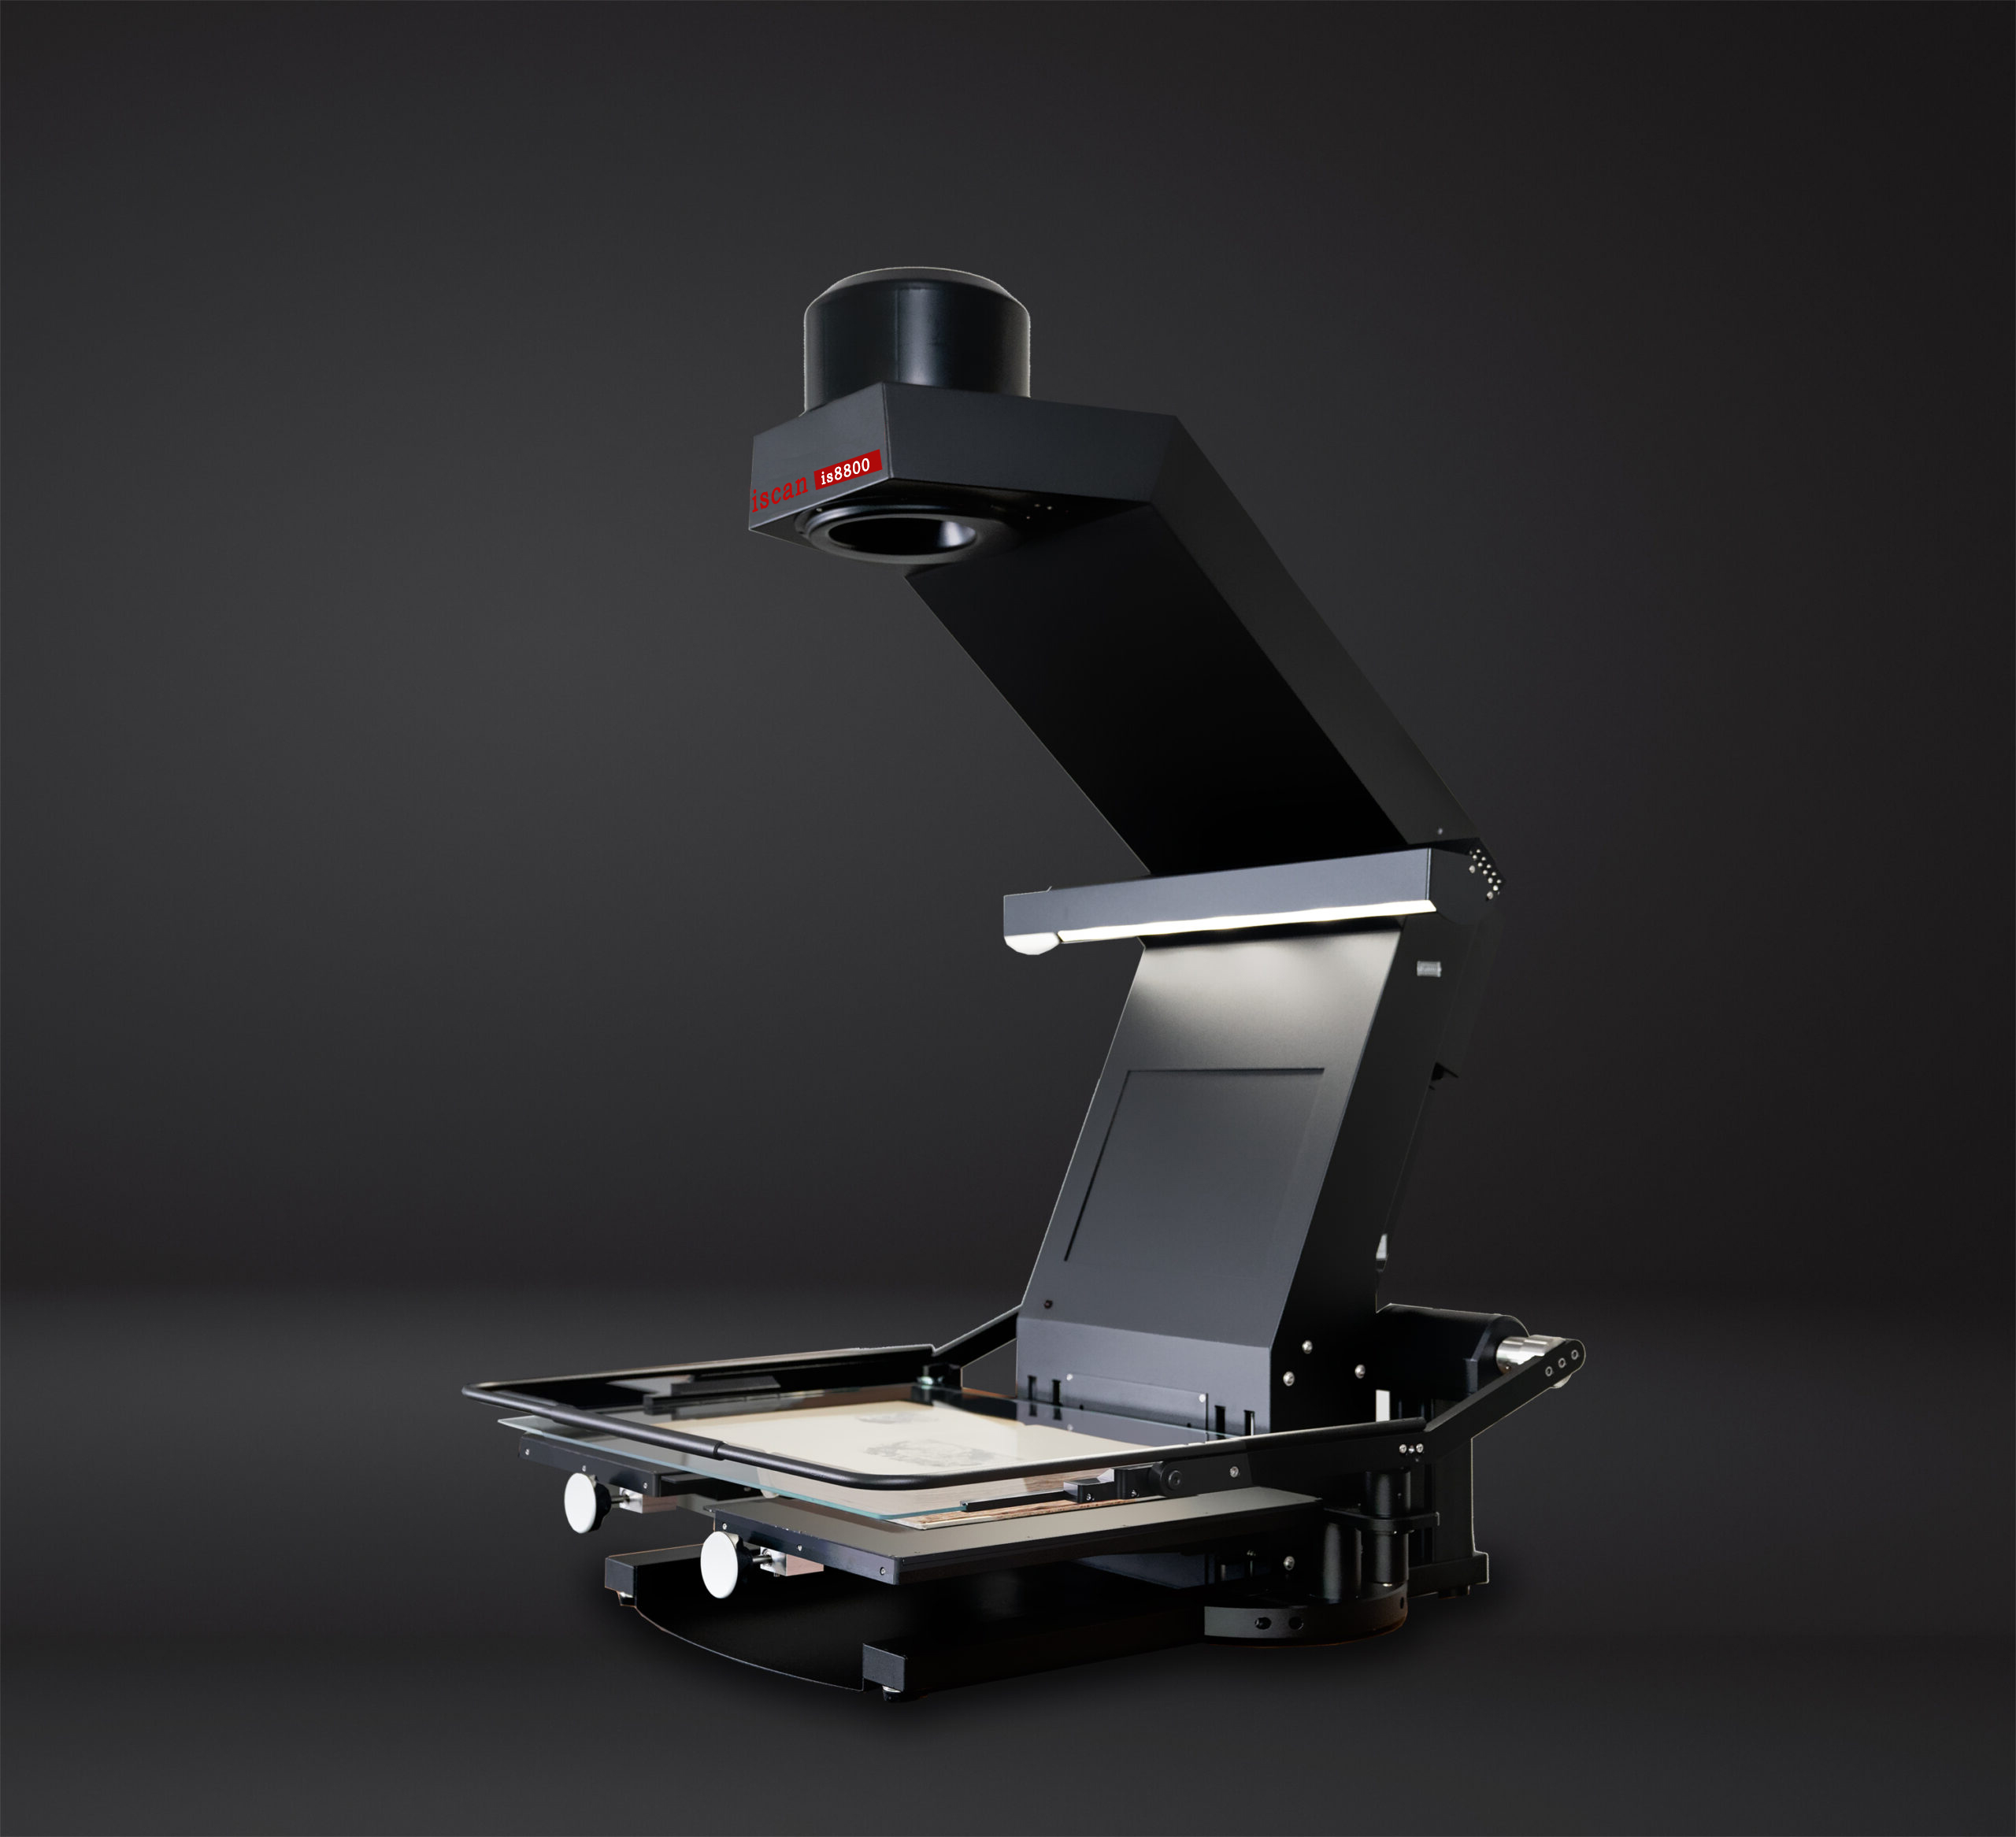 ArtixScan DI 2288s-票据扫描-扫描仪-国产平板石材胶片A3扫描仪-高速工业相机-无损检测-中晶科技